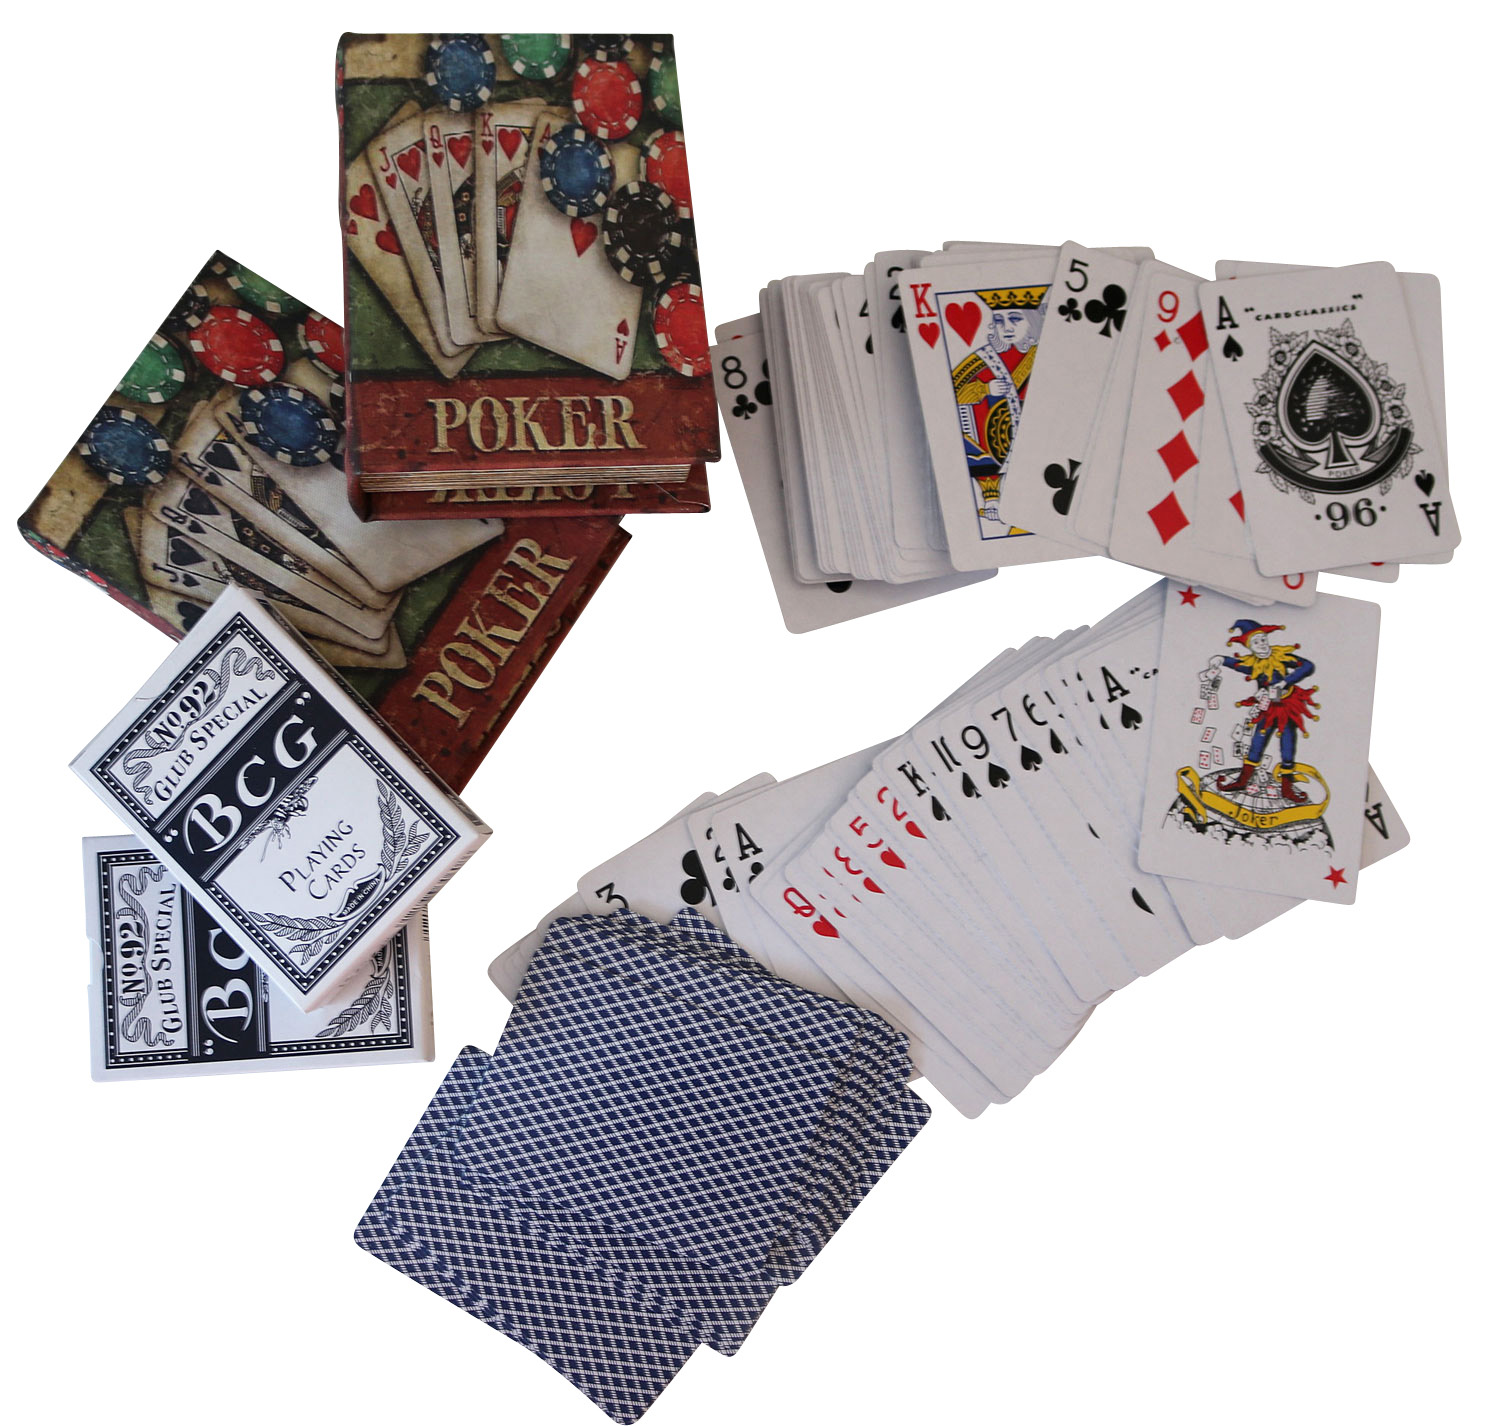 2X Cartas de póker de póquer Caja Juego Estilo Antiguo guasón Libro Falso baraja